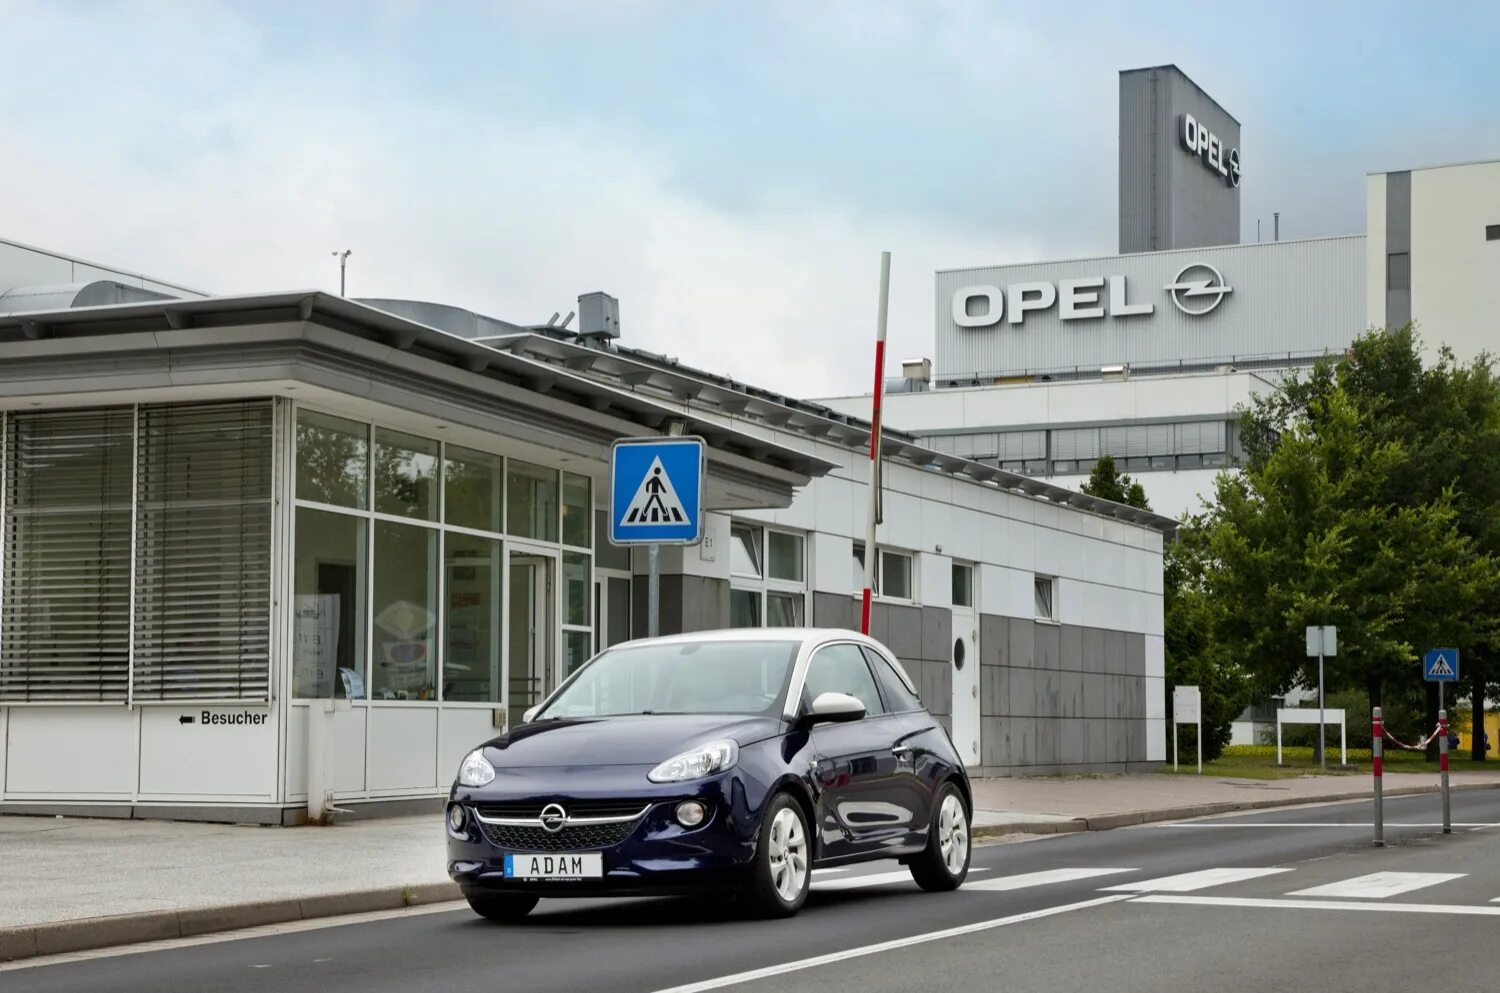 Купить опель в германии. Завод Opel Айзенах. Опель GM. Opel завод в Германии. Завод Опель в Гессене.